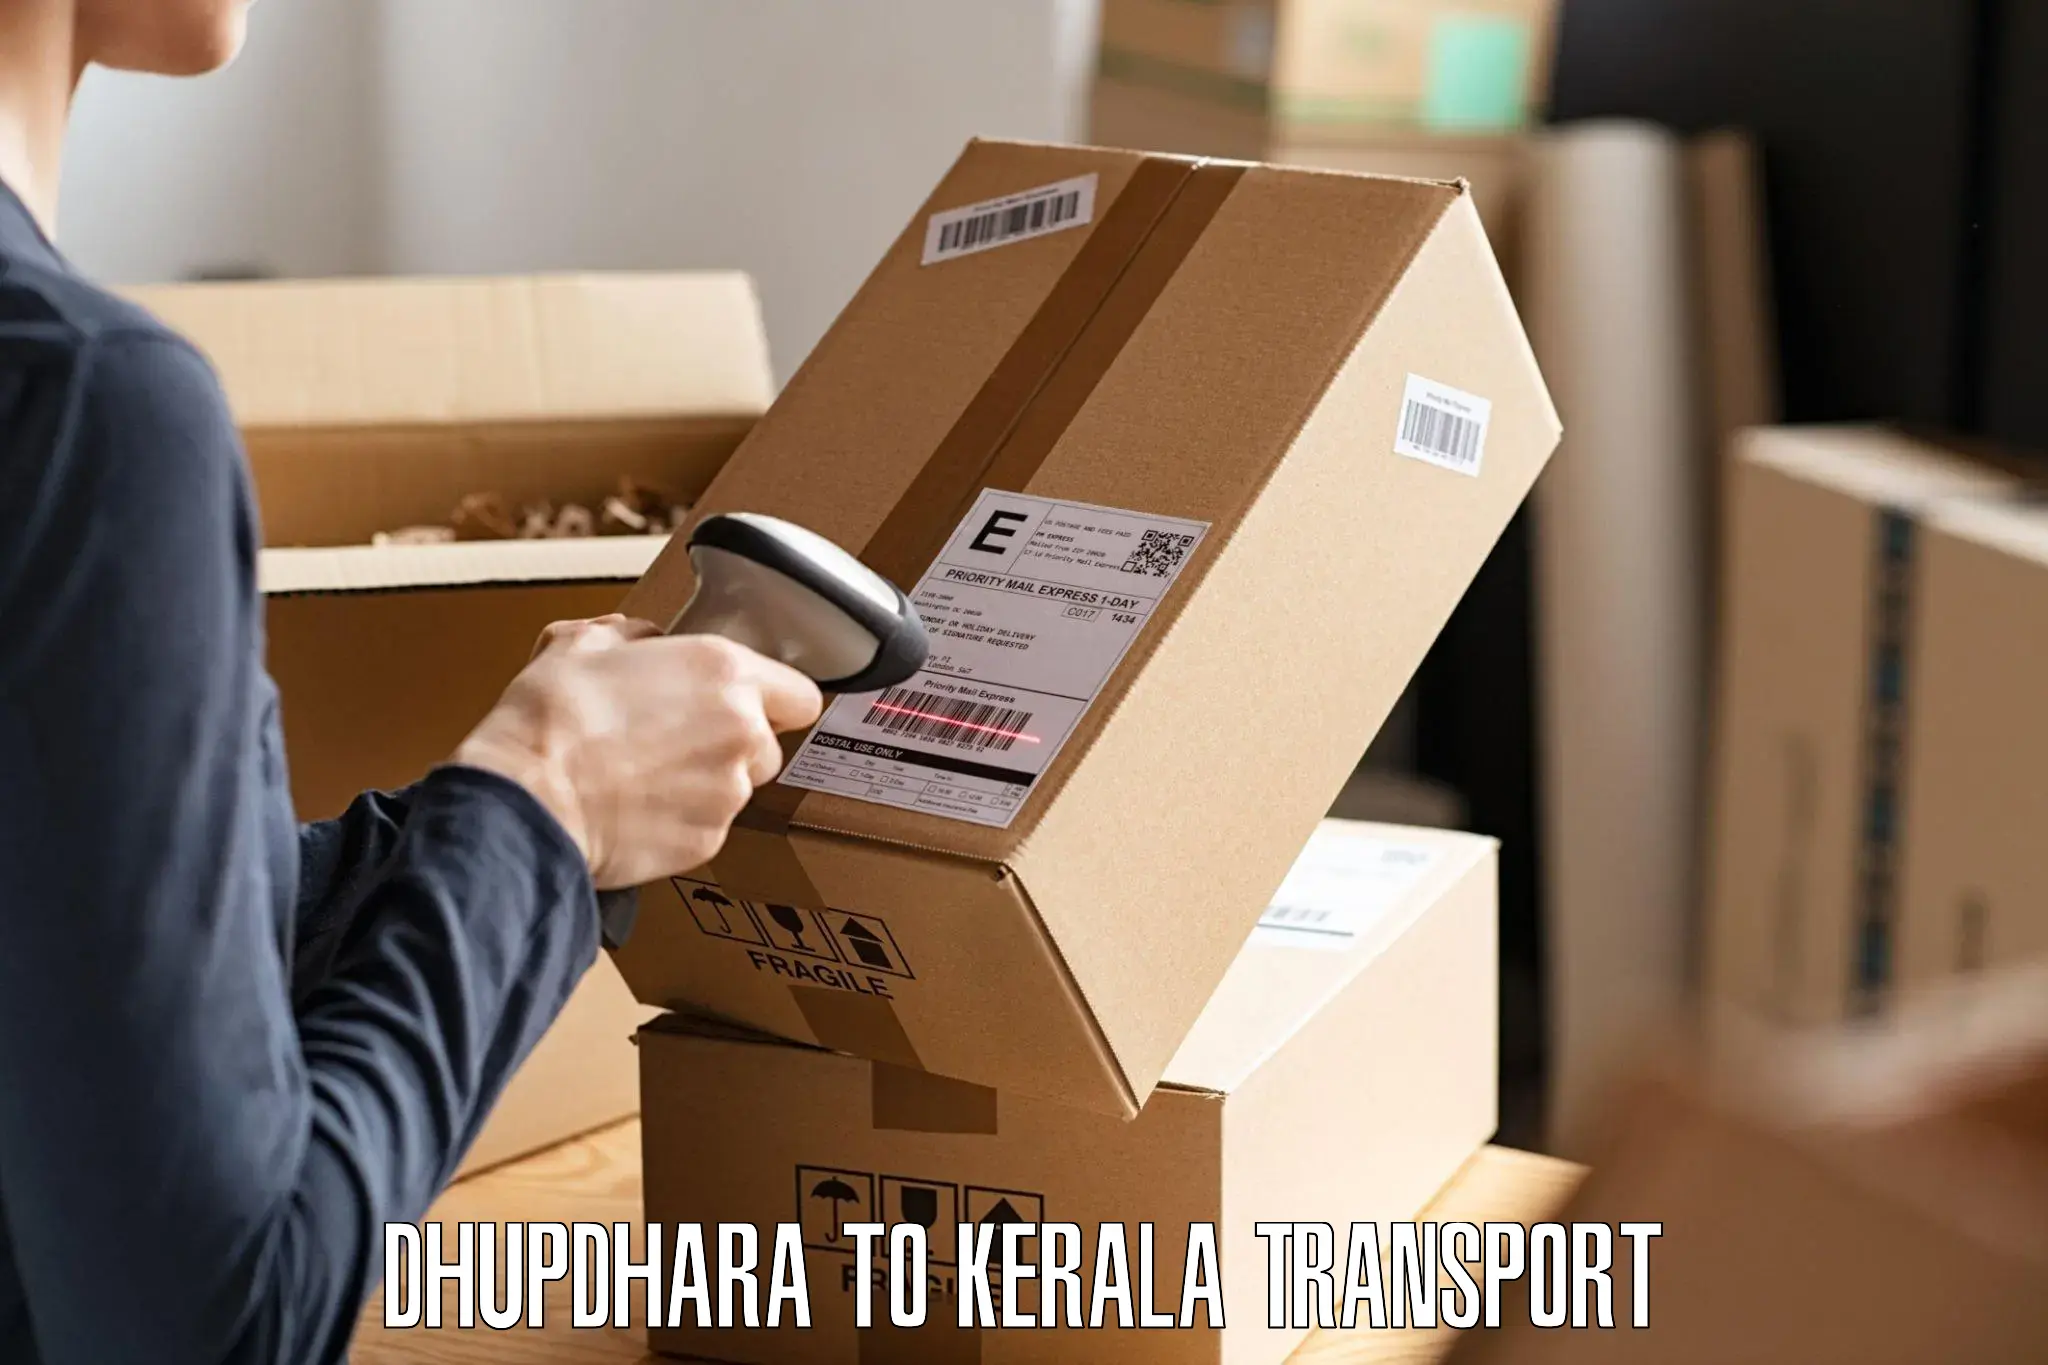 Furniture transport service Dhupdhara to Kattappana